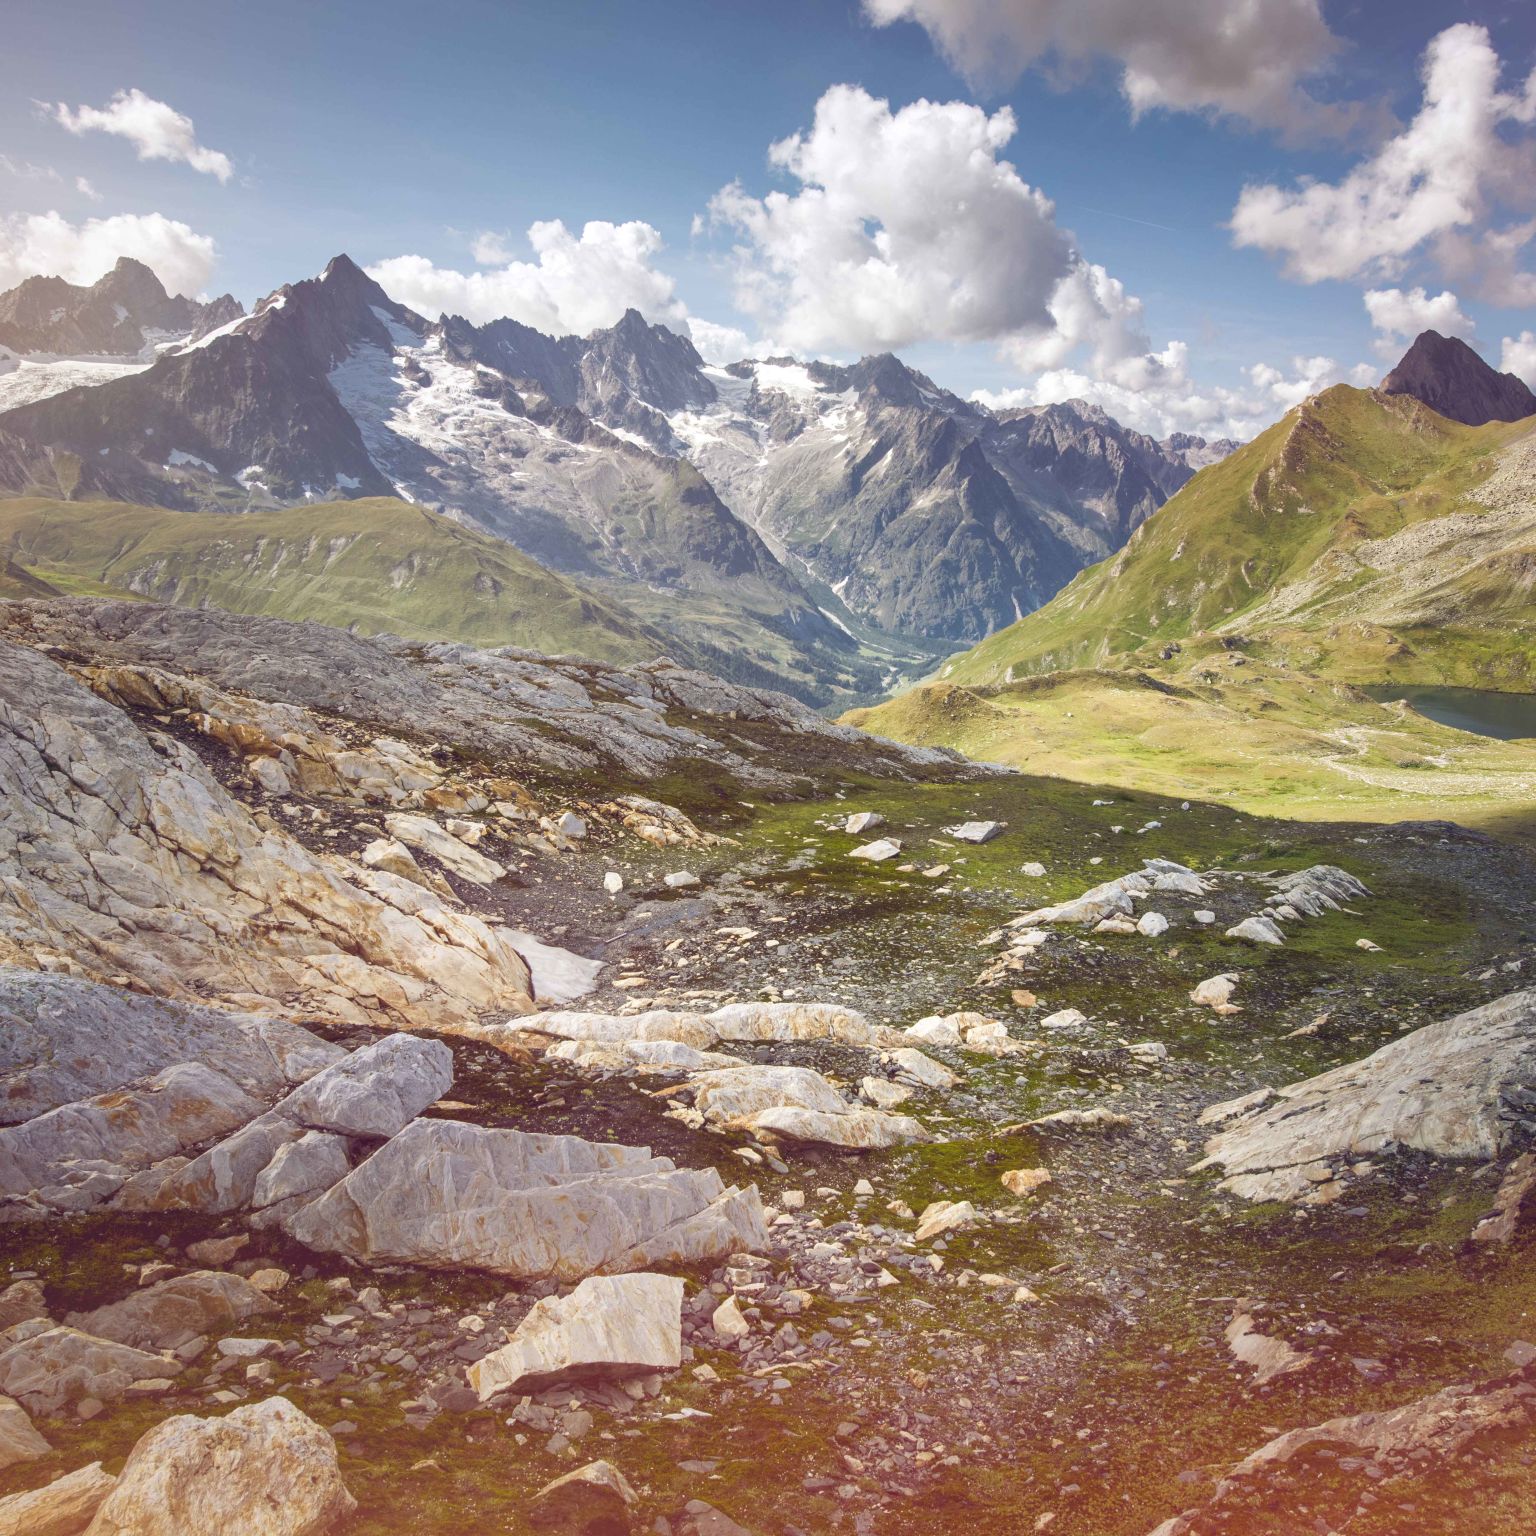 Paysage de montagne avec pierres et lac, Val Ferret, La Fouly, Valais, Suisse